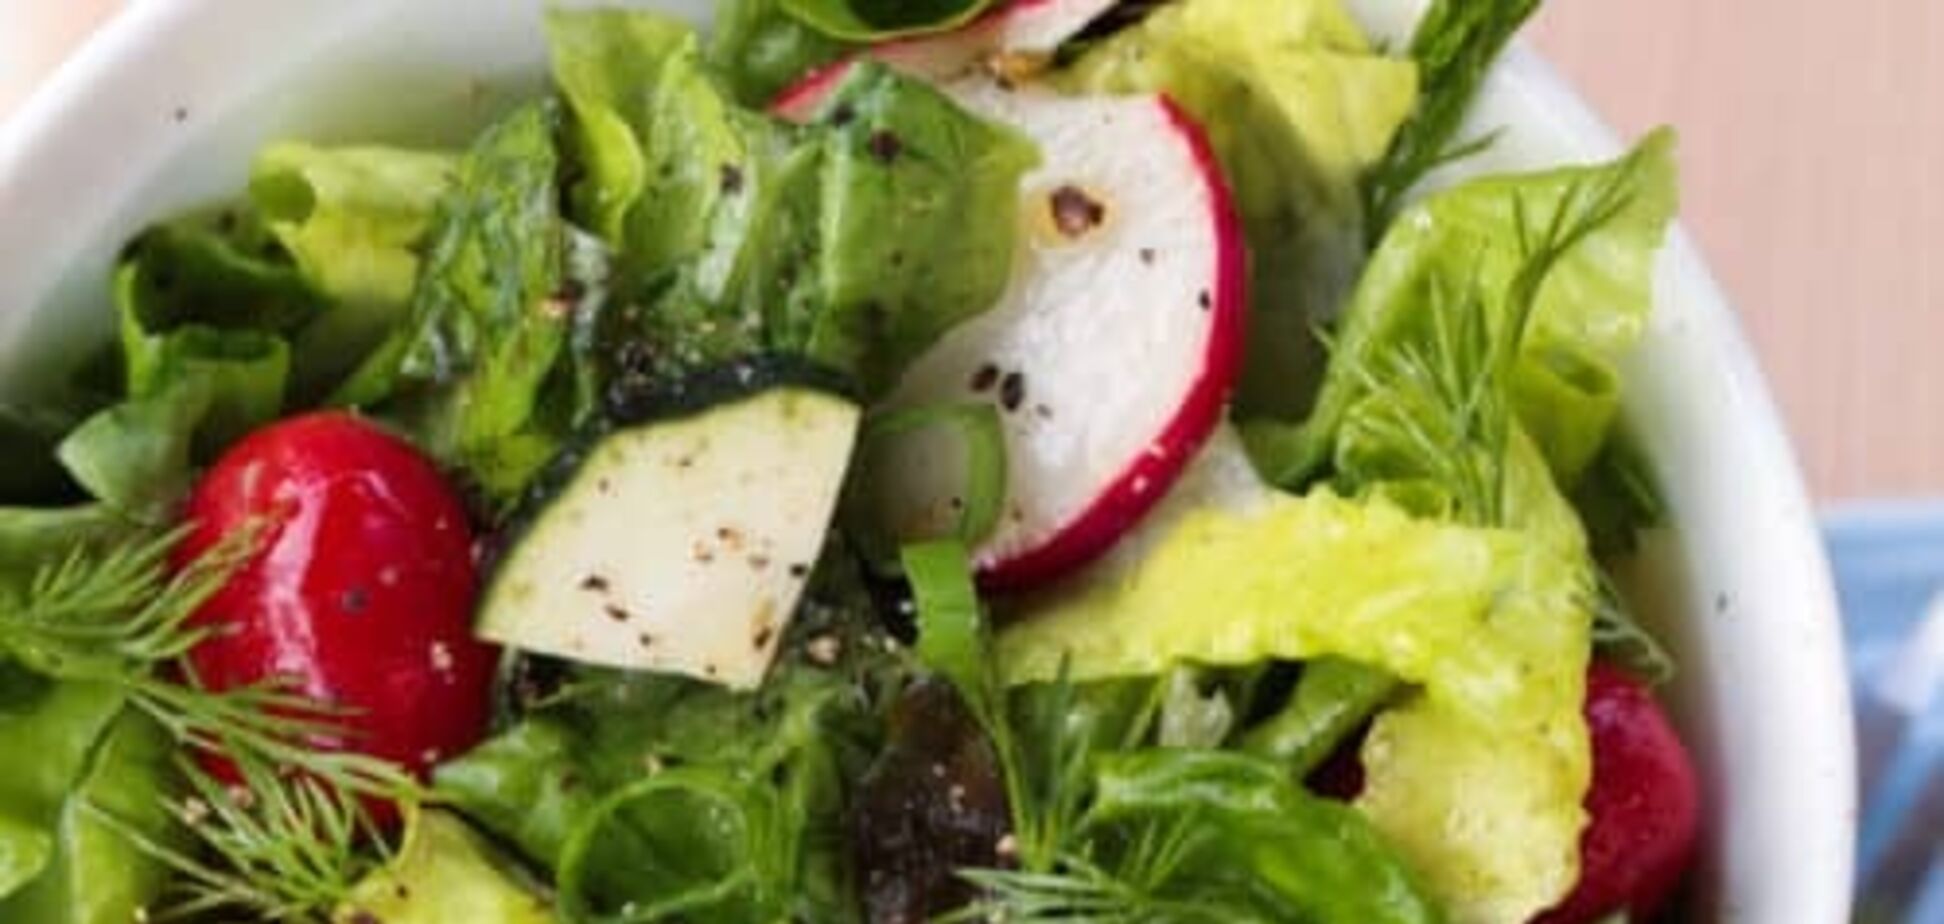 Легкий весняний салат зі свіжих овочів та зелені: чим заправити 